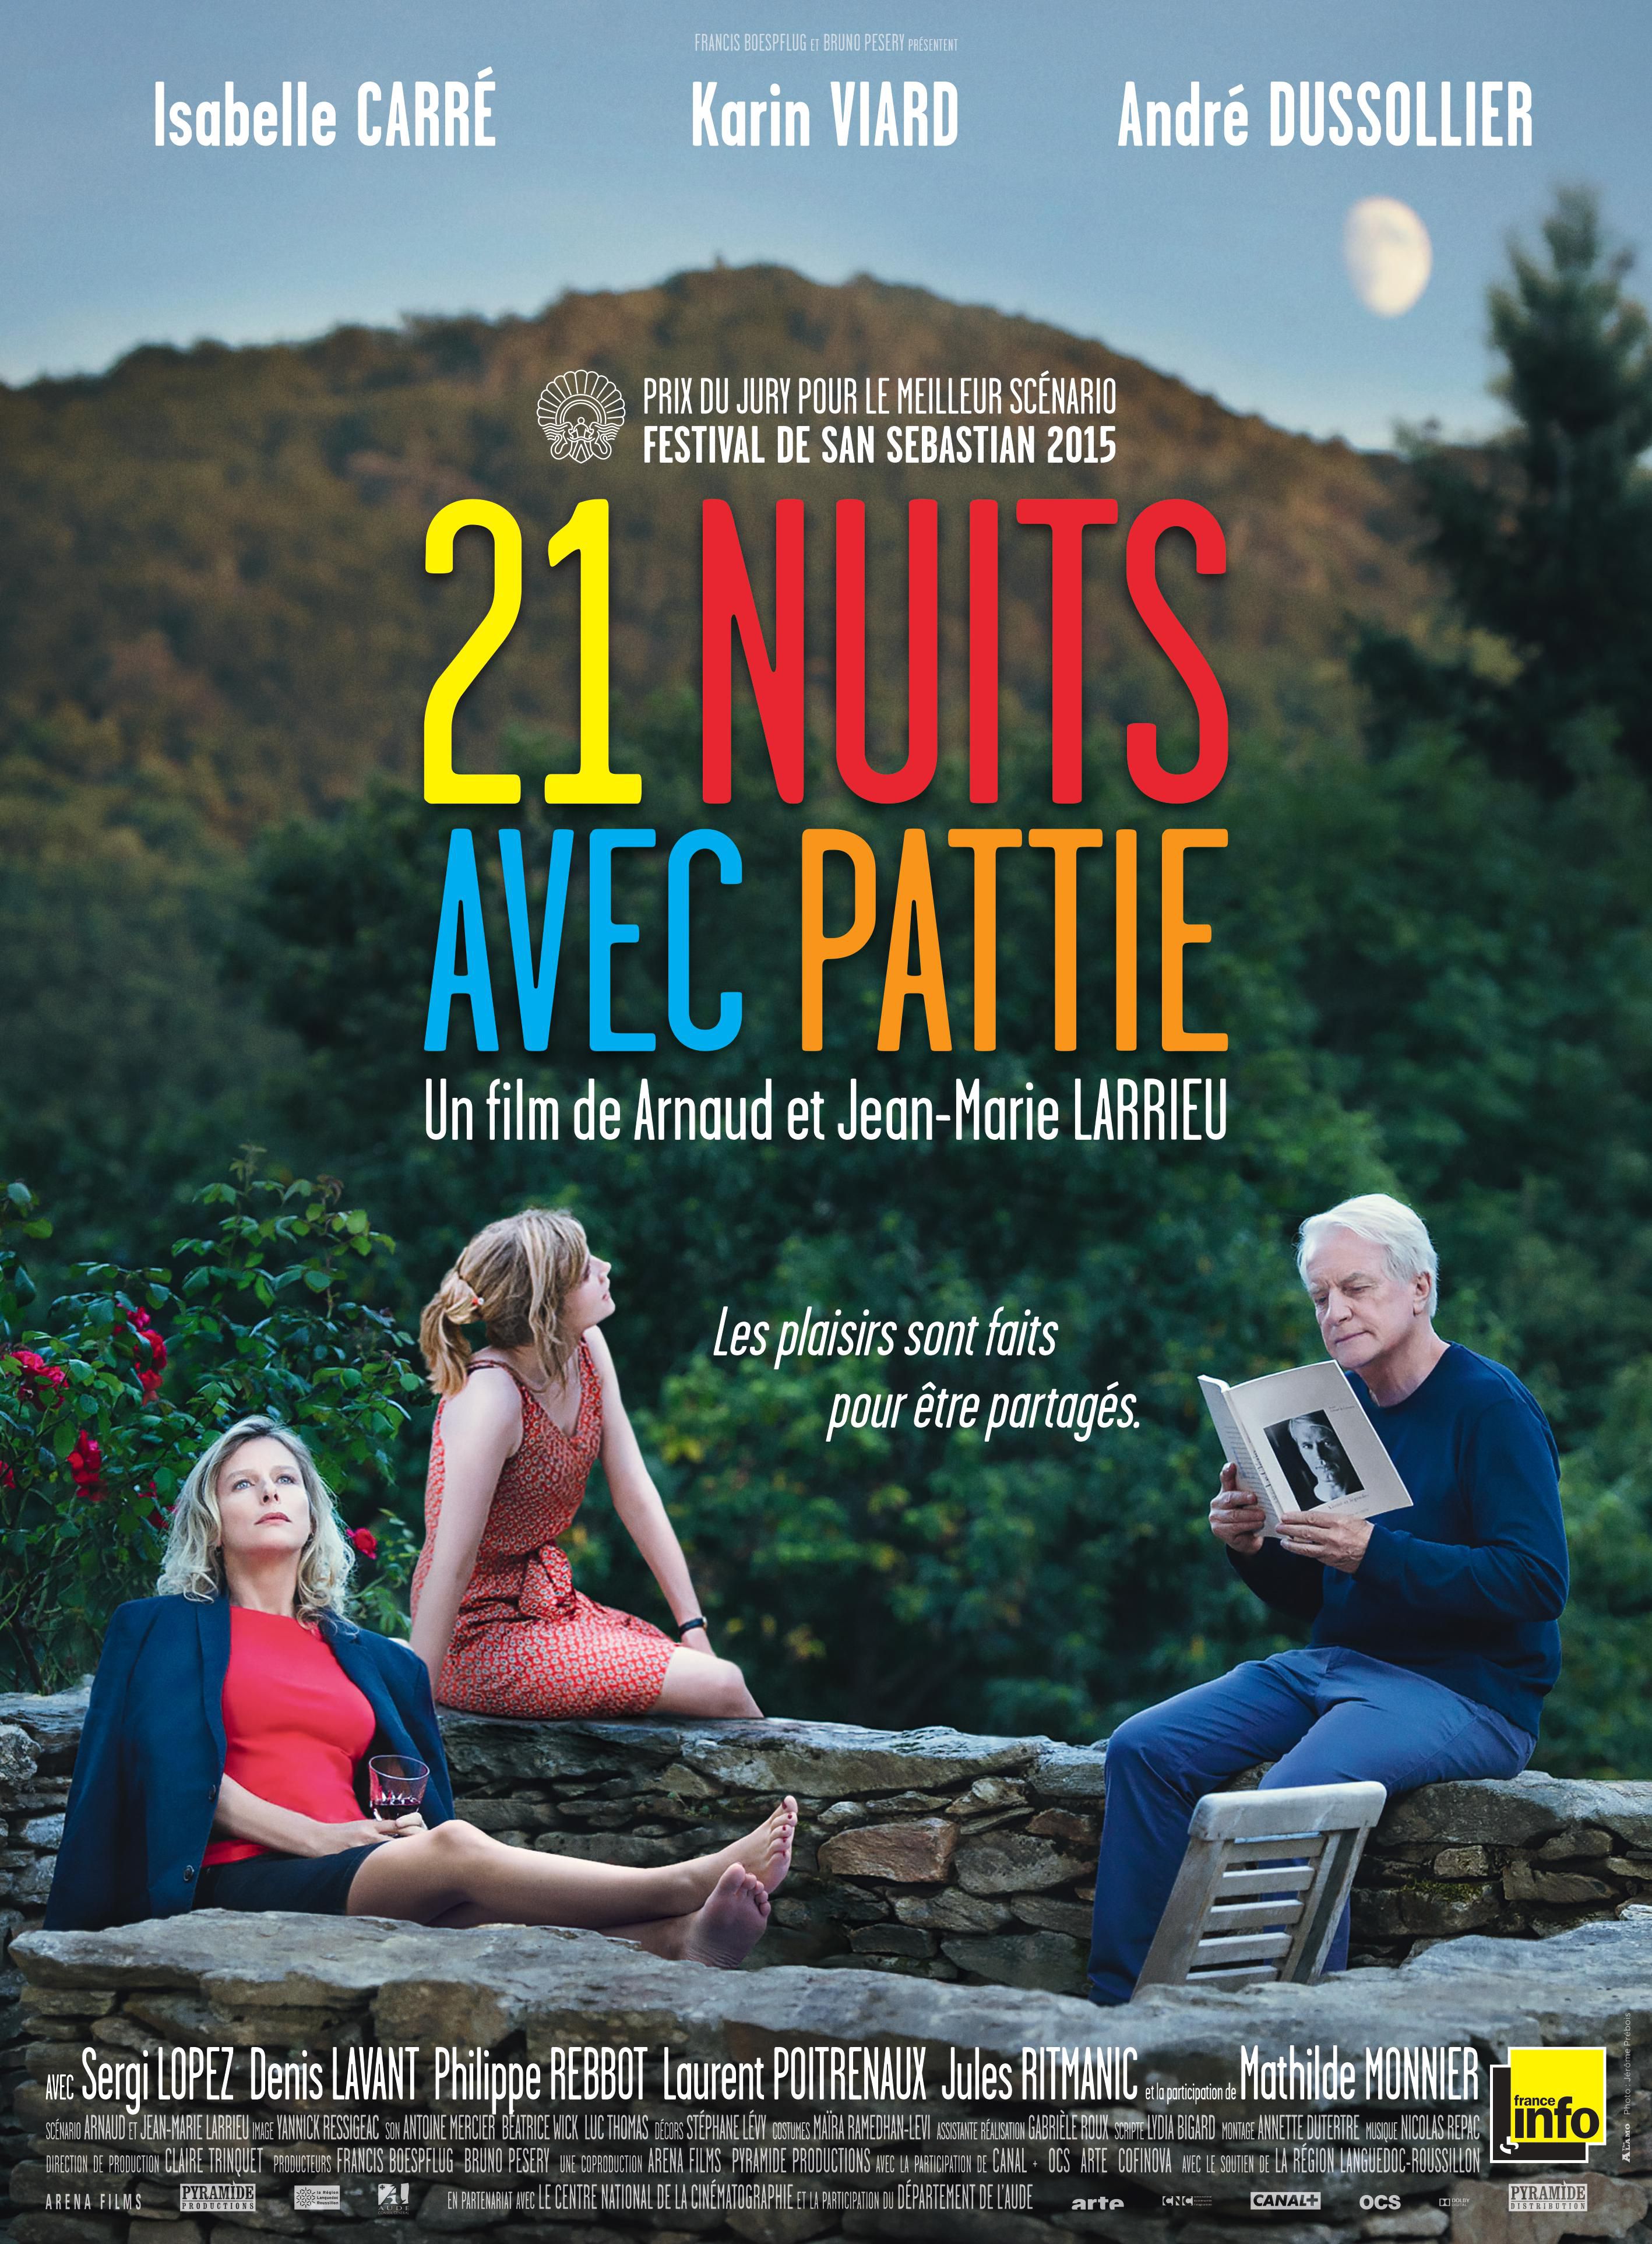 21 nuits avec Pattie - Film (2015) streaming VF gratuit complet